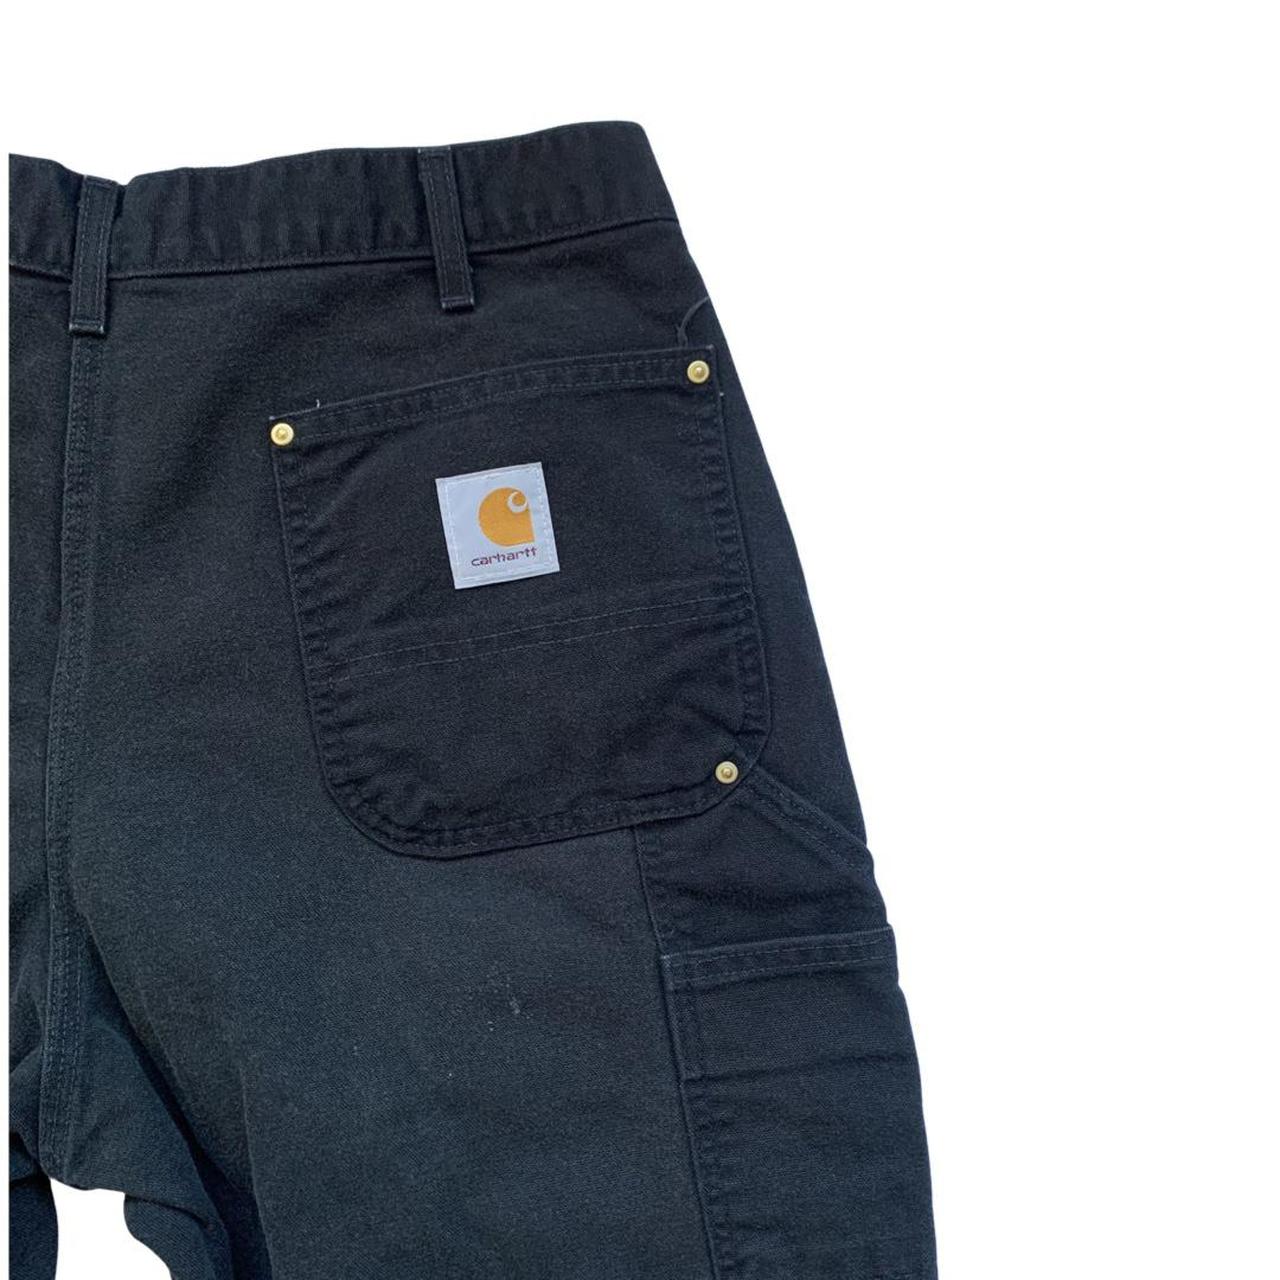 Black Carhartt workwear double knee pants nicely... - Depop